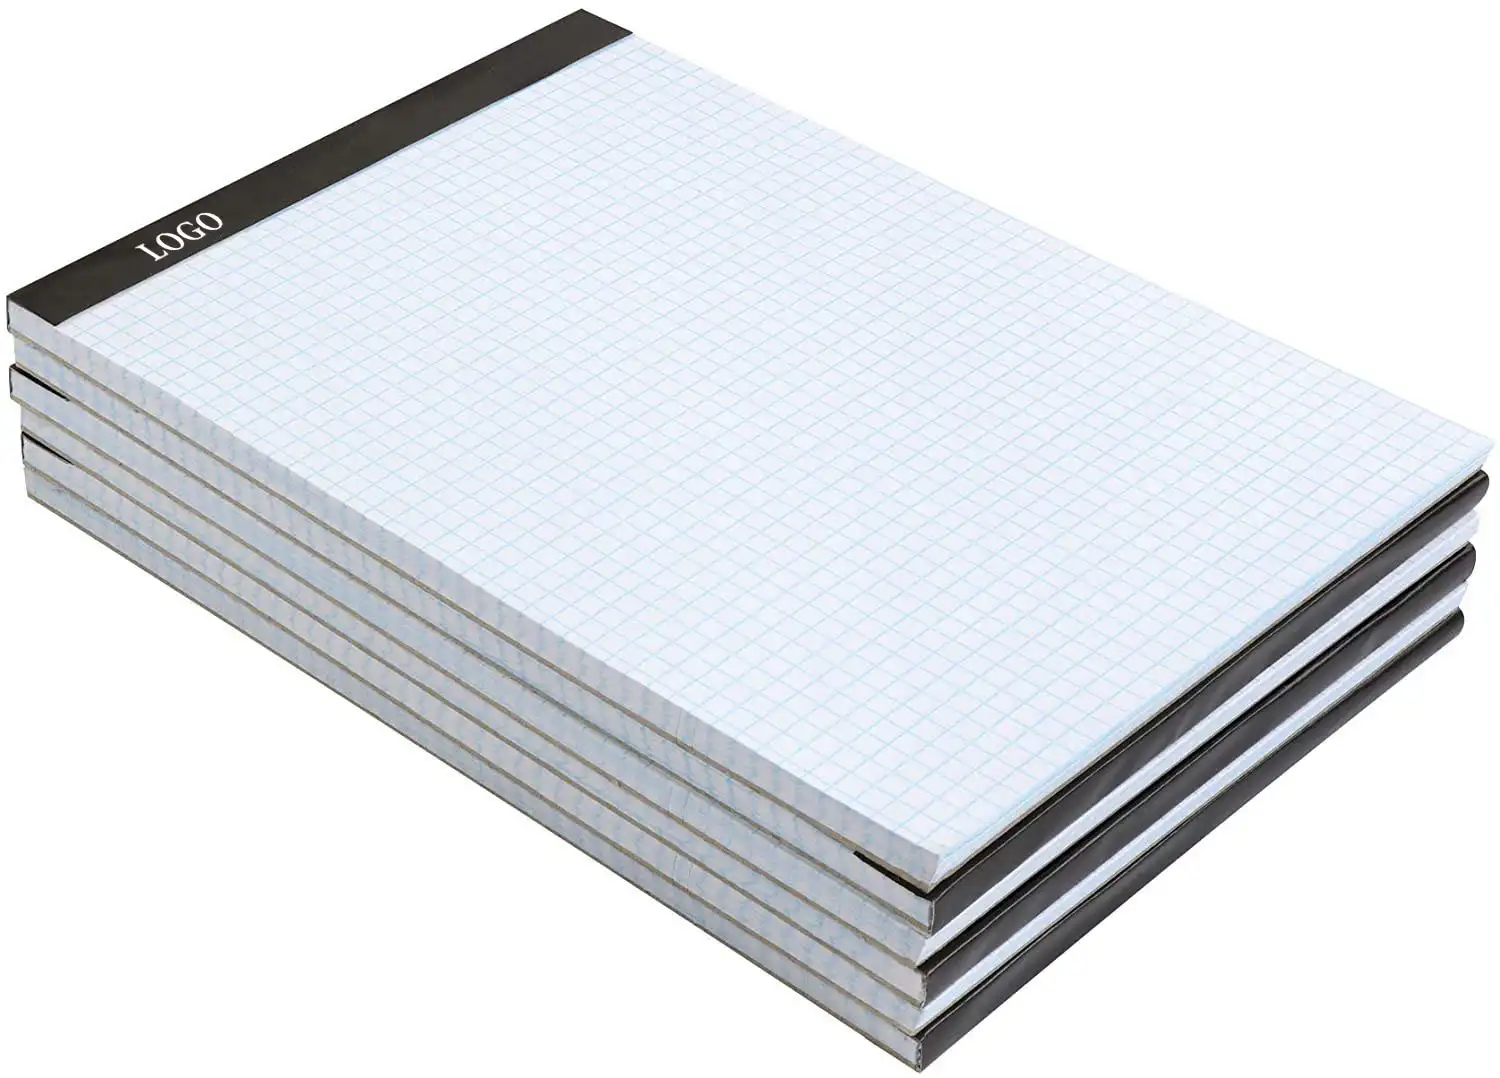 Классическая бумажная подкладка размером 8,5x11 дюймов, основная четырехлинейная Раскладка